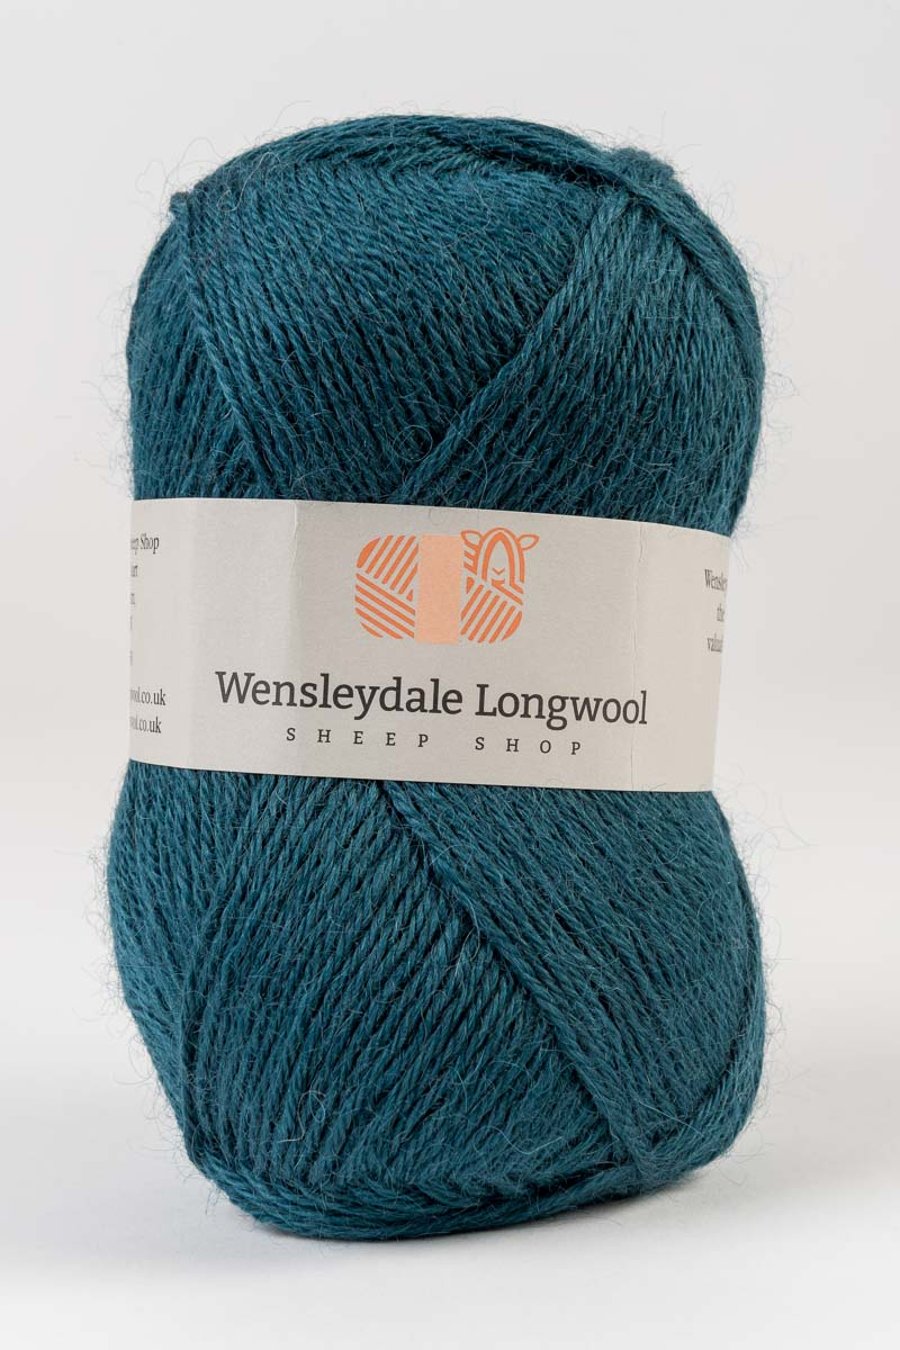 Wensleydale Longwool Double Knit Yarn - Teal